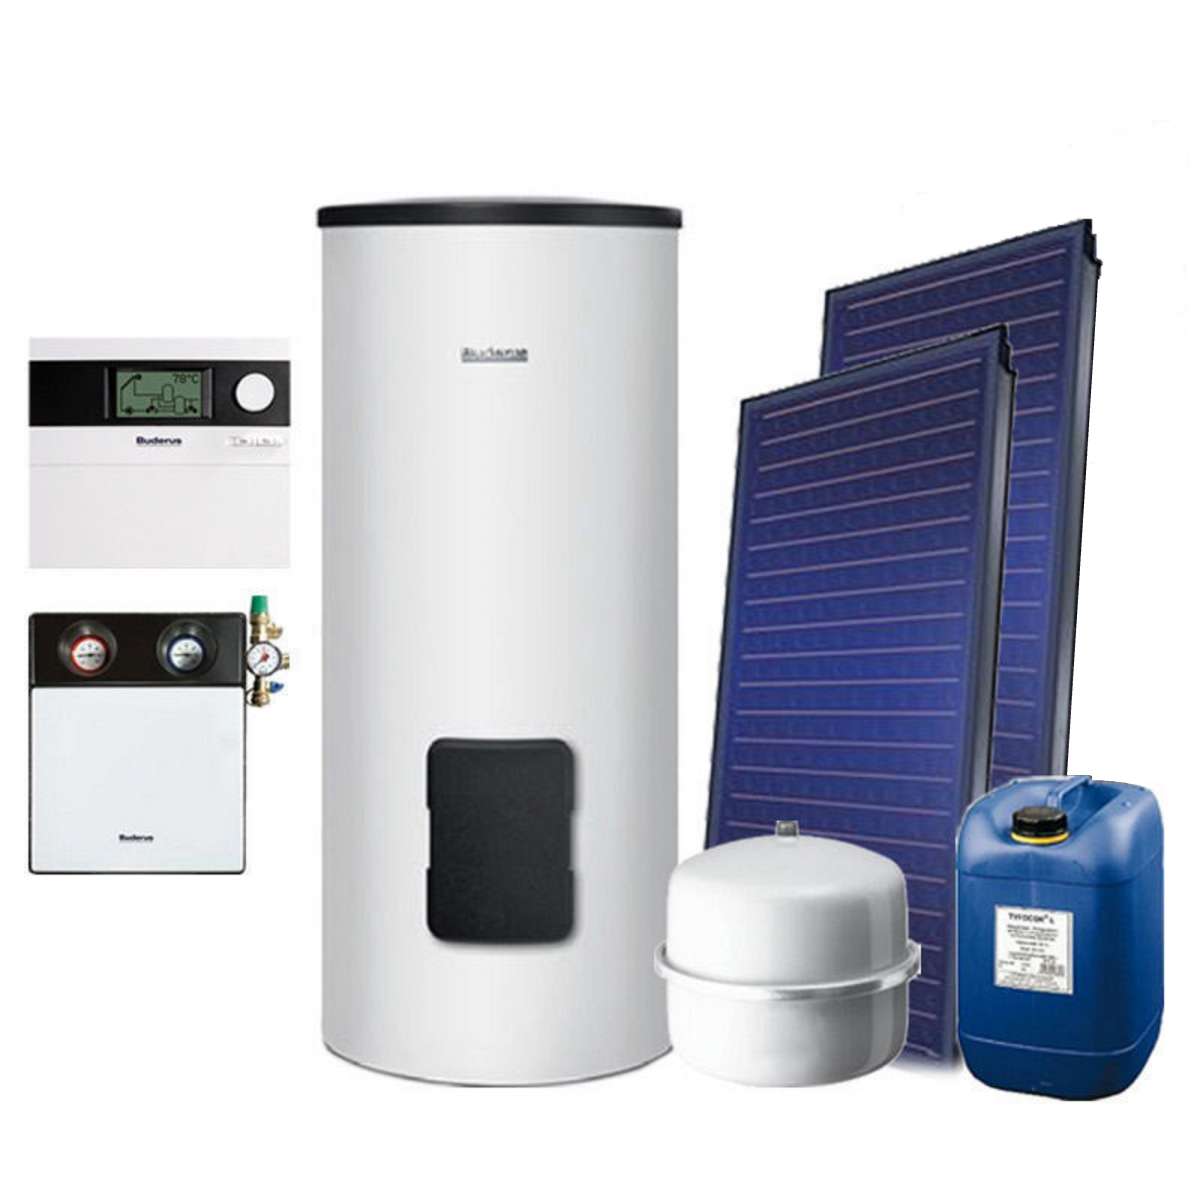 Buderus Logaplus Solarpaket mit wählbarem Speicher. Online kaufen bei SanHe im Onlineshop für Badezimmer, Sanitär, Heizung und Installation.